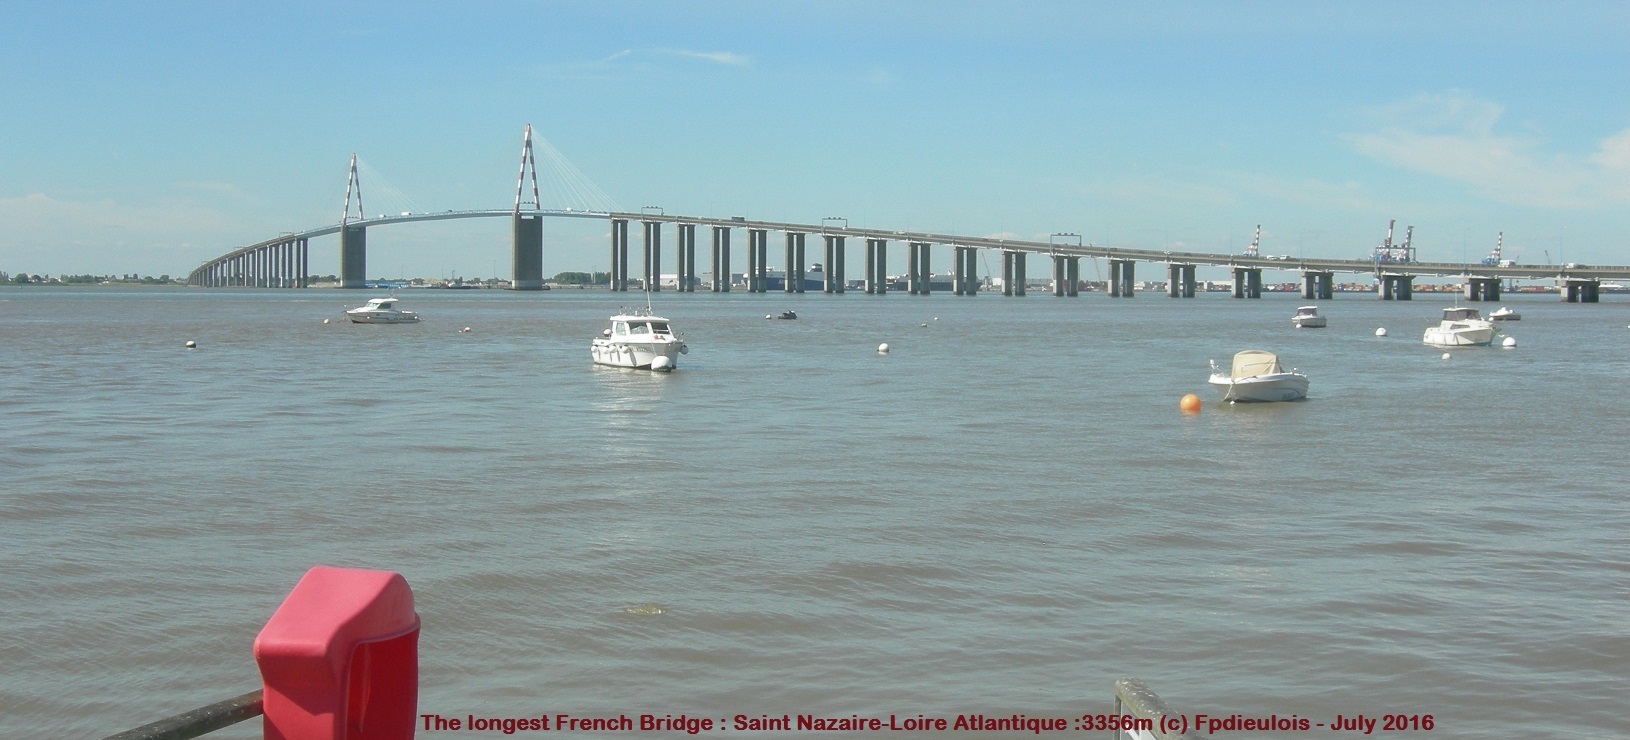 LONGEST FRENCH BRIDGE :3356m SAINT NAZAIRE DIEULOIS